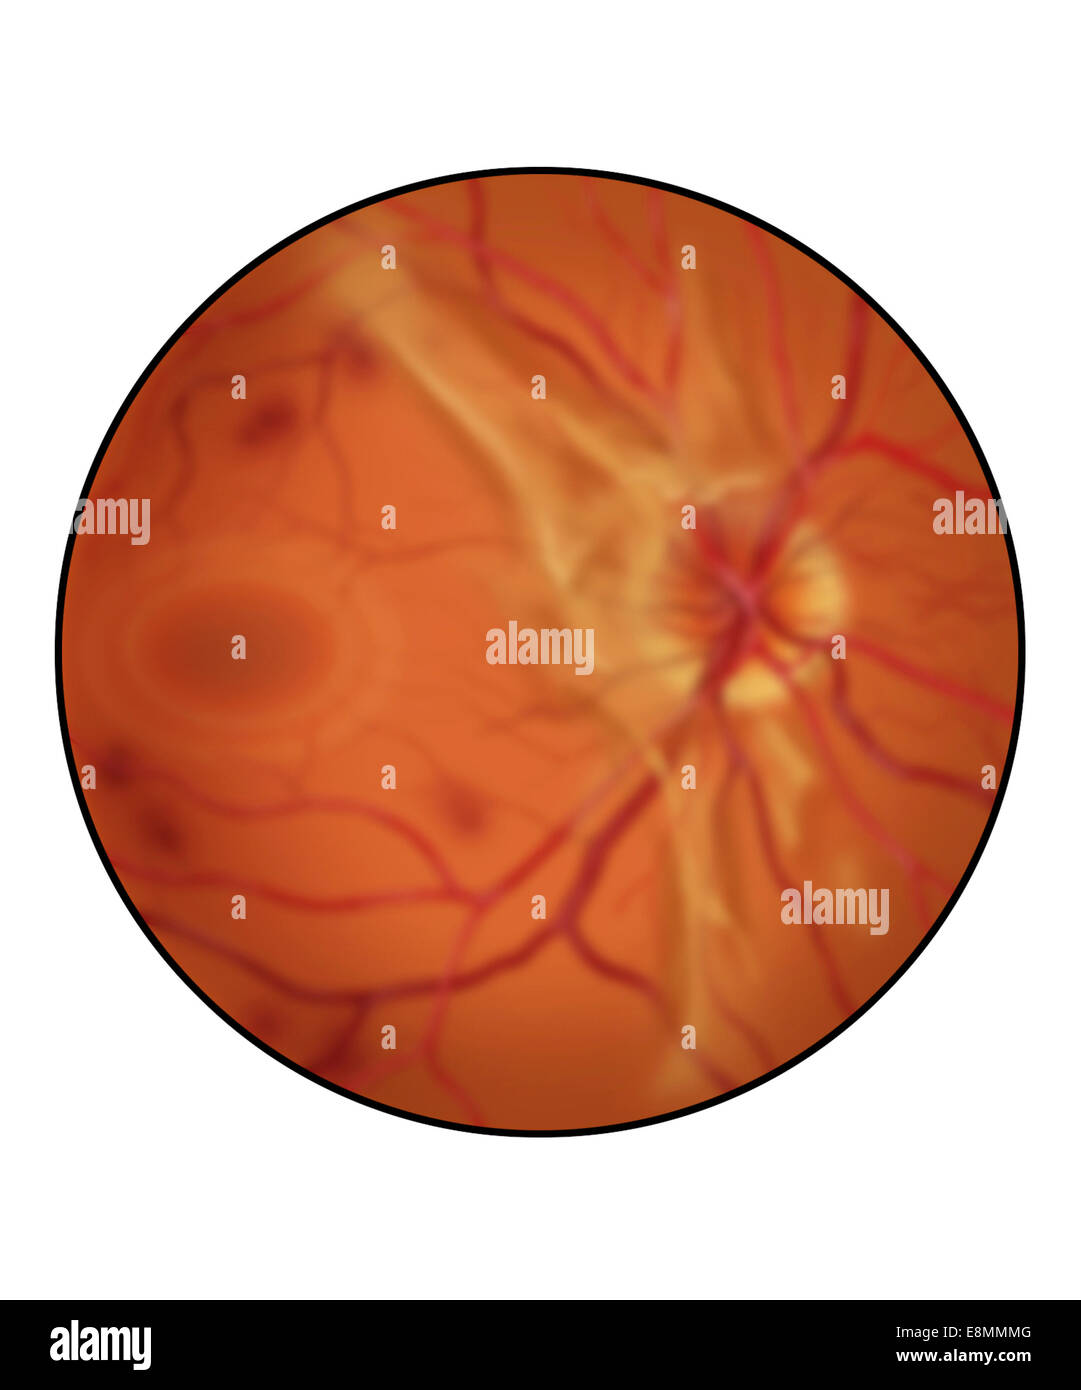 Retina con avanzata retinopatia diabetica, mostranti accresciuto il tessuto cicatriziale, emorragia e diffondere vetroso di sangue (appea sfocata Foto Stock